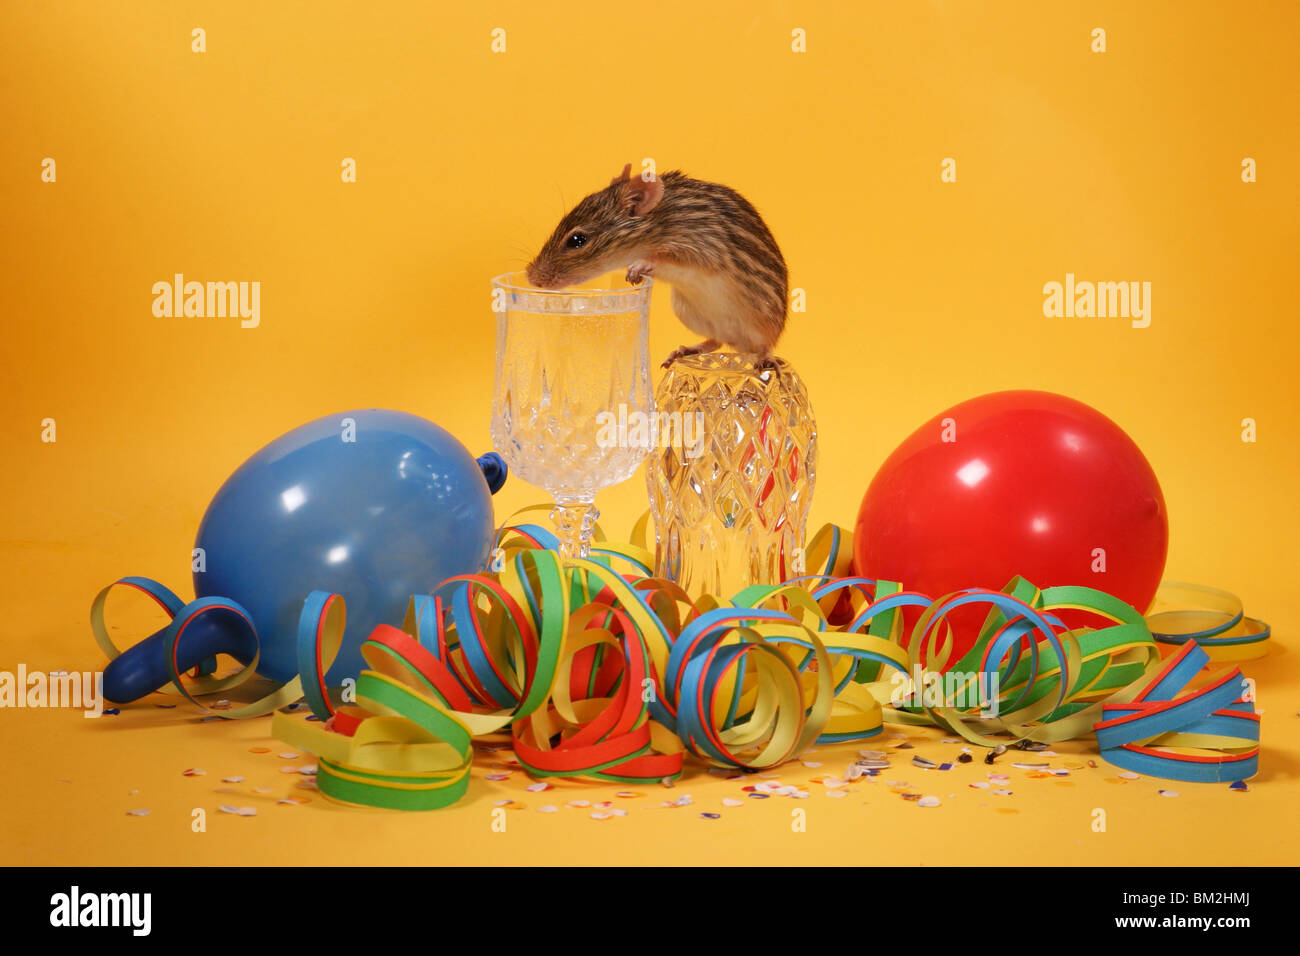 Streifenmaus Silvester / Gras Maus ausgezogen Stockfotografie - Alamy